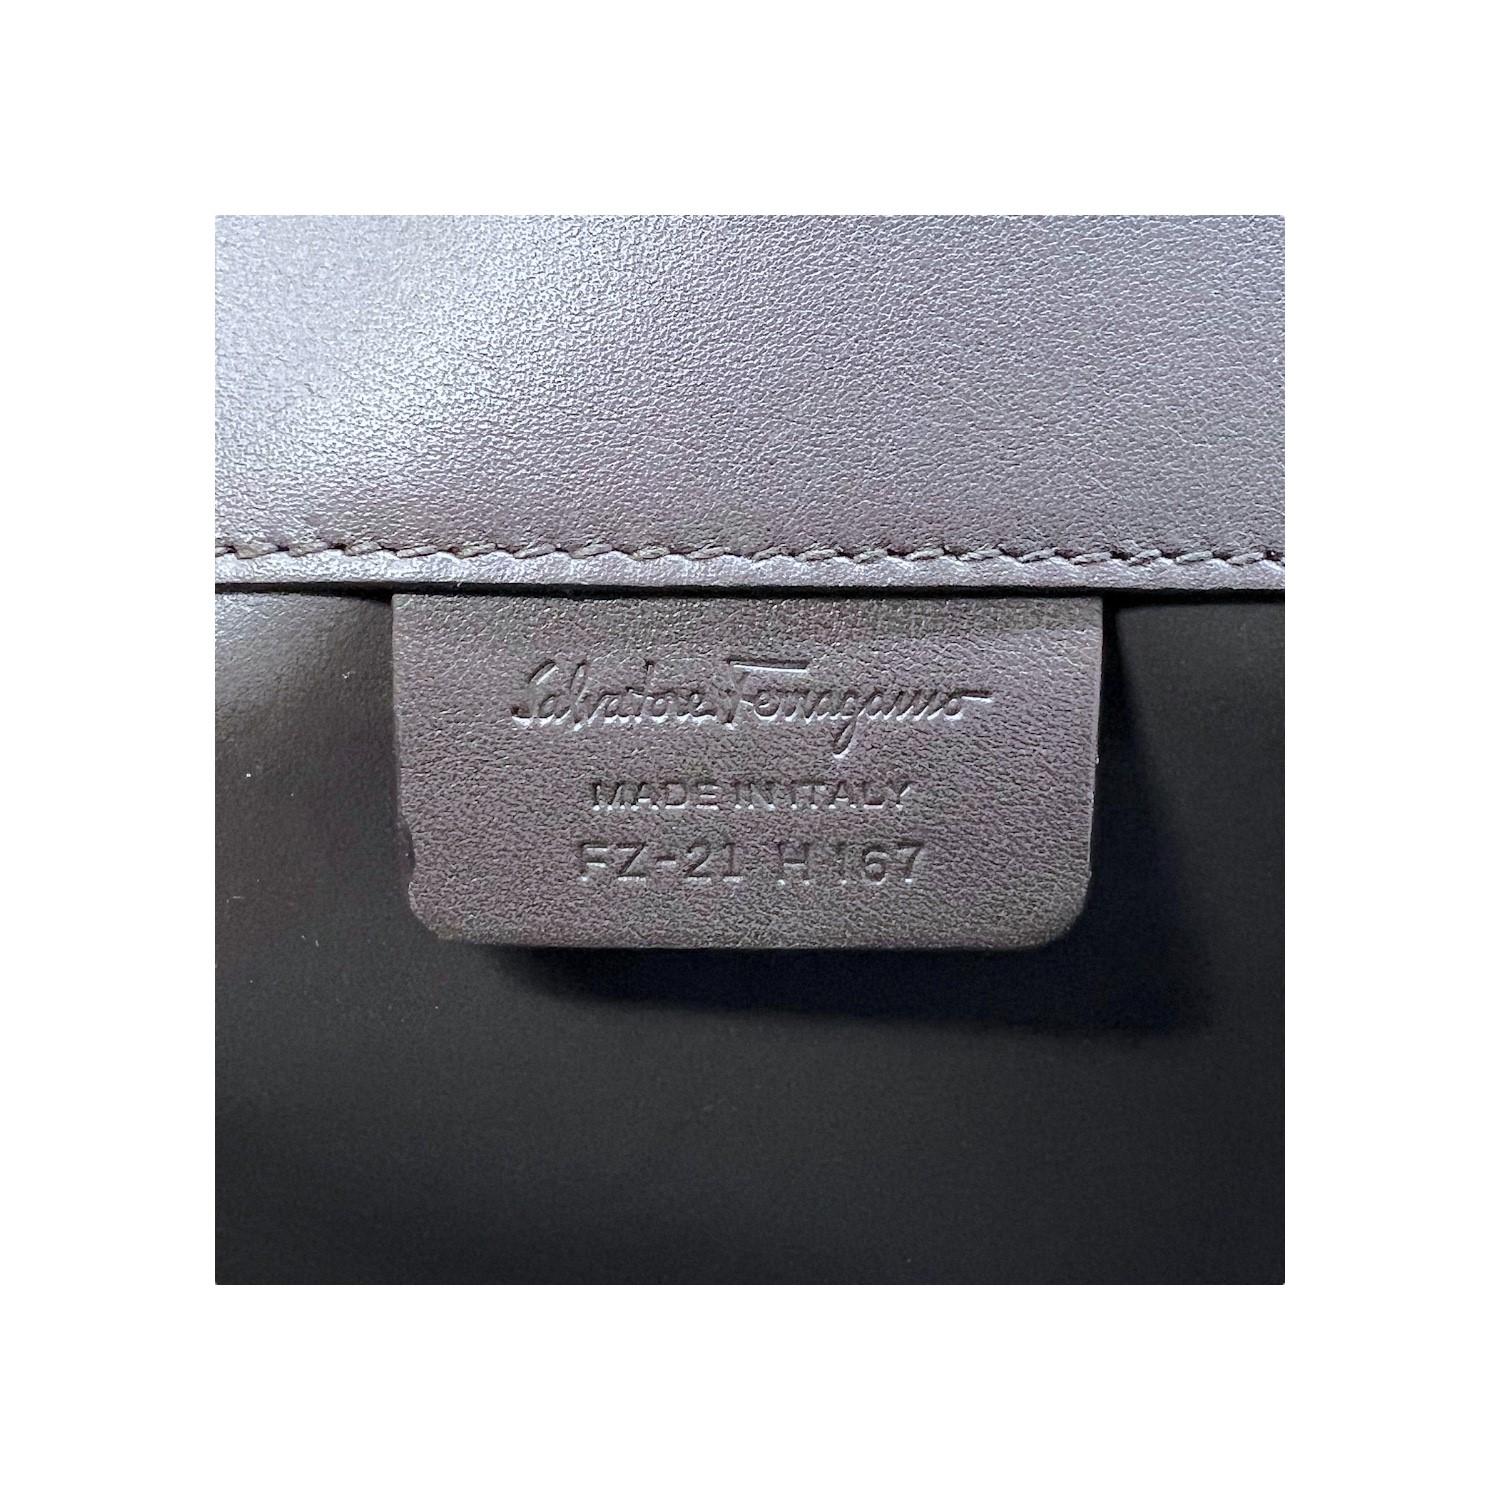 Salvatore Ferragamo Leather Studio Tote For Sale 5